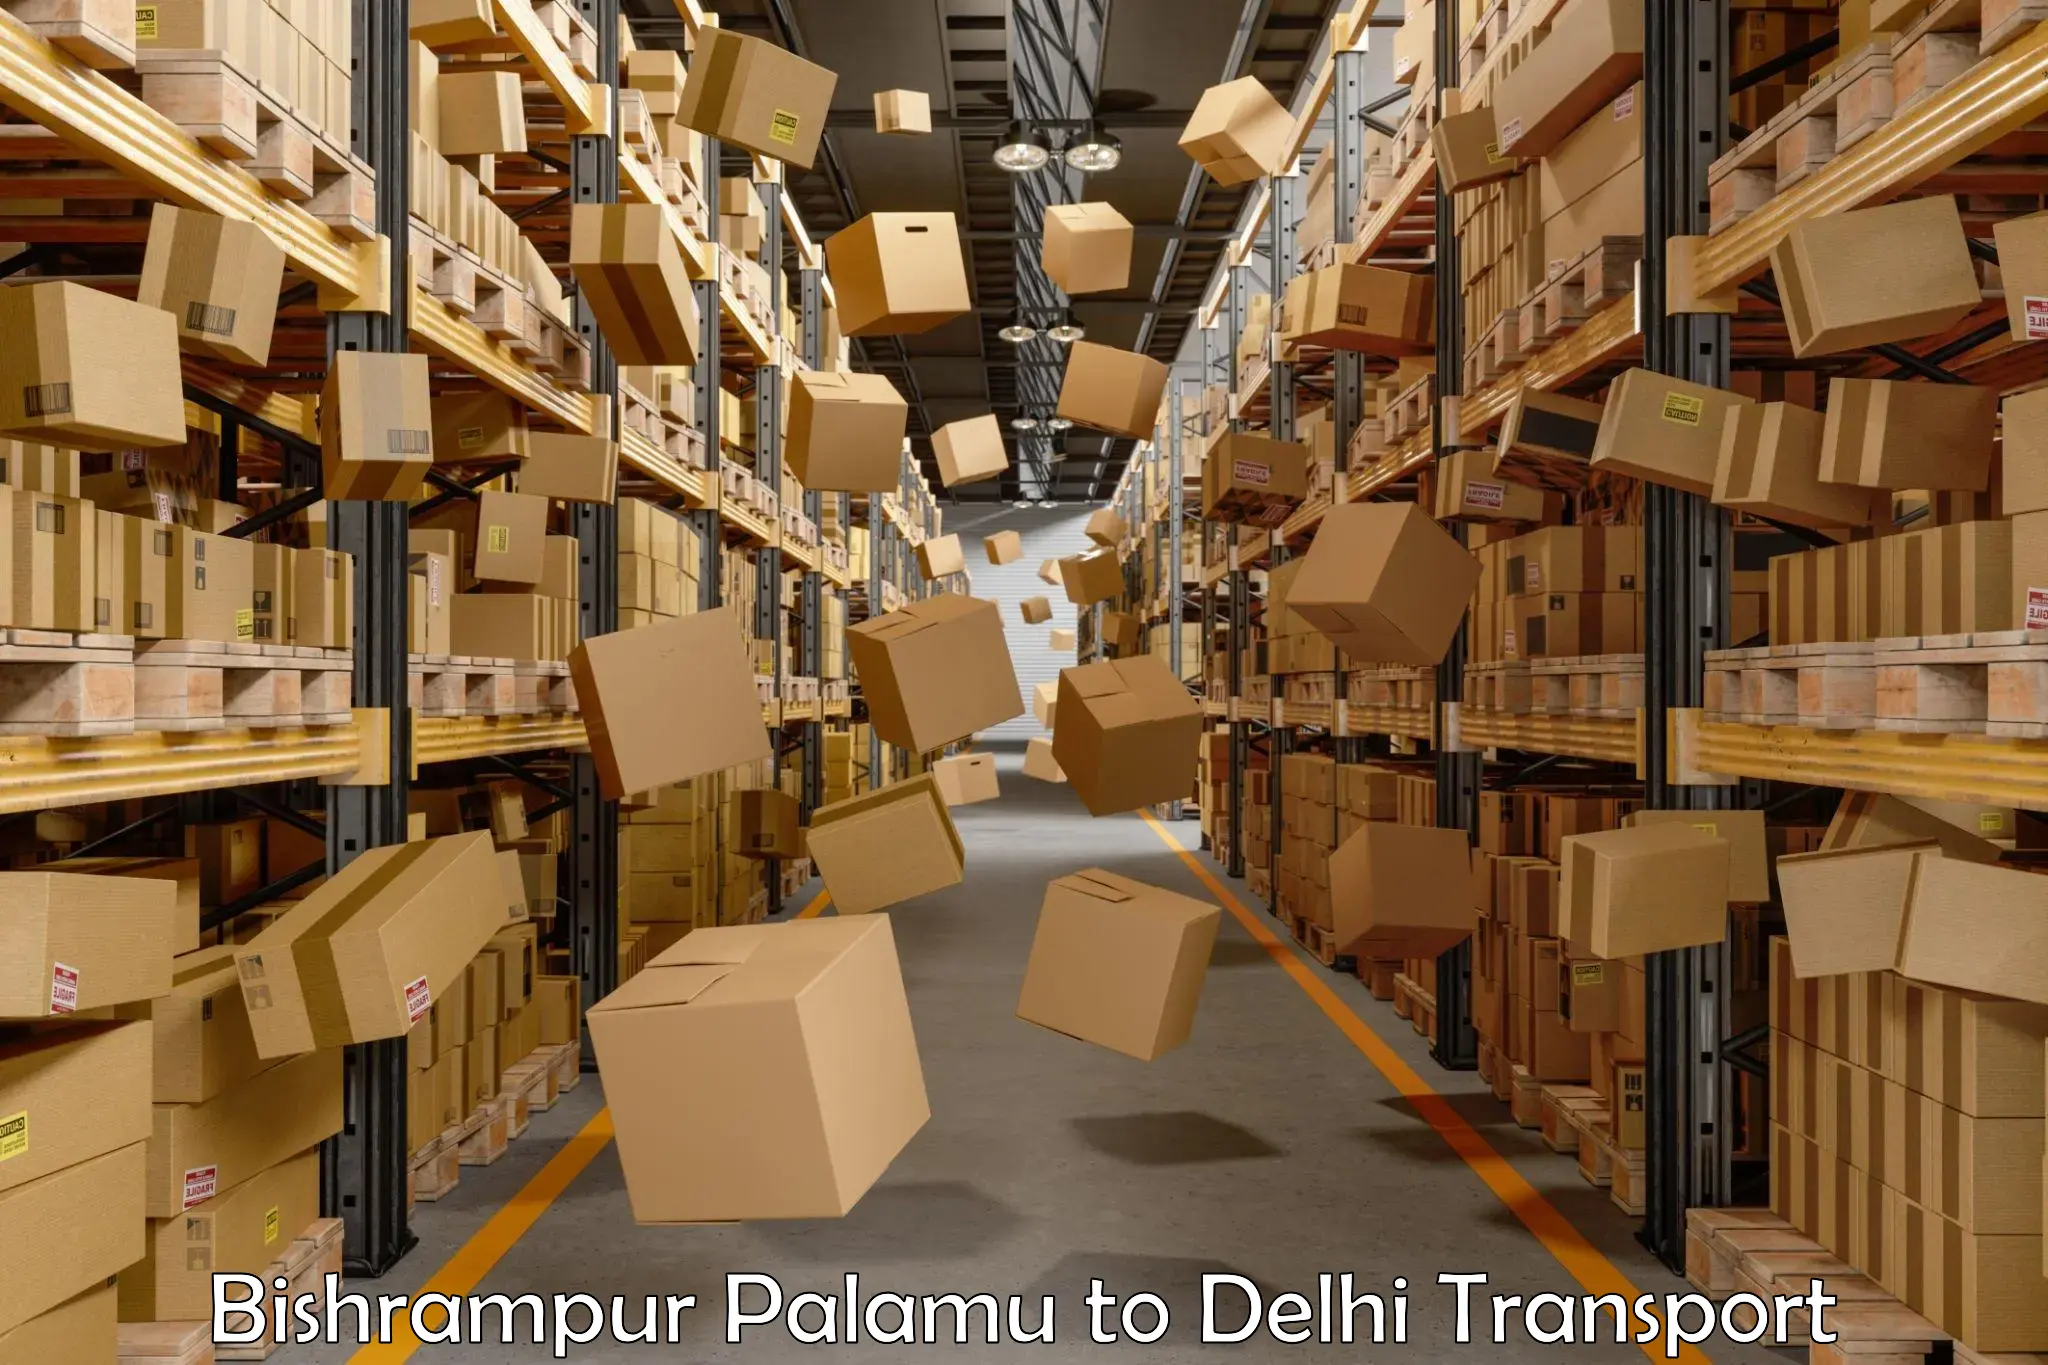 Shipping partner Bishrampur Palamu to IIT Delhi